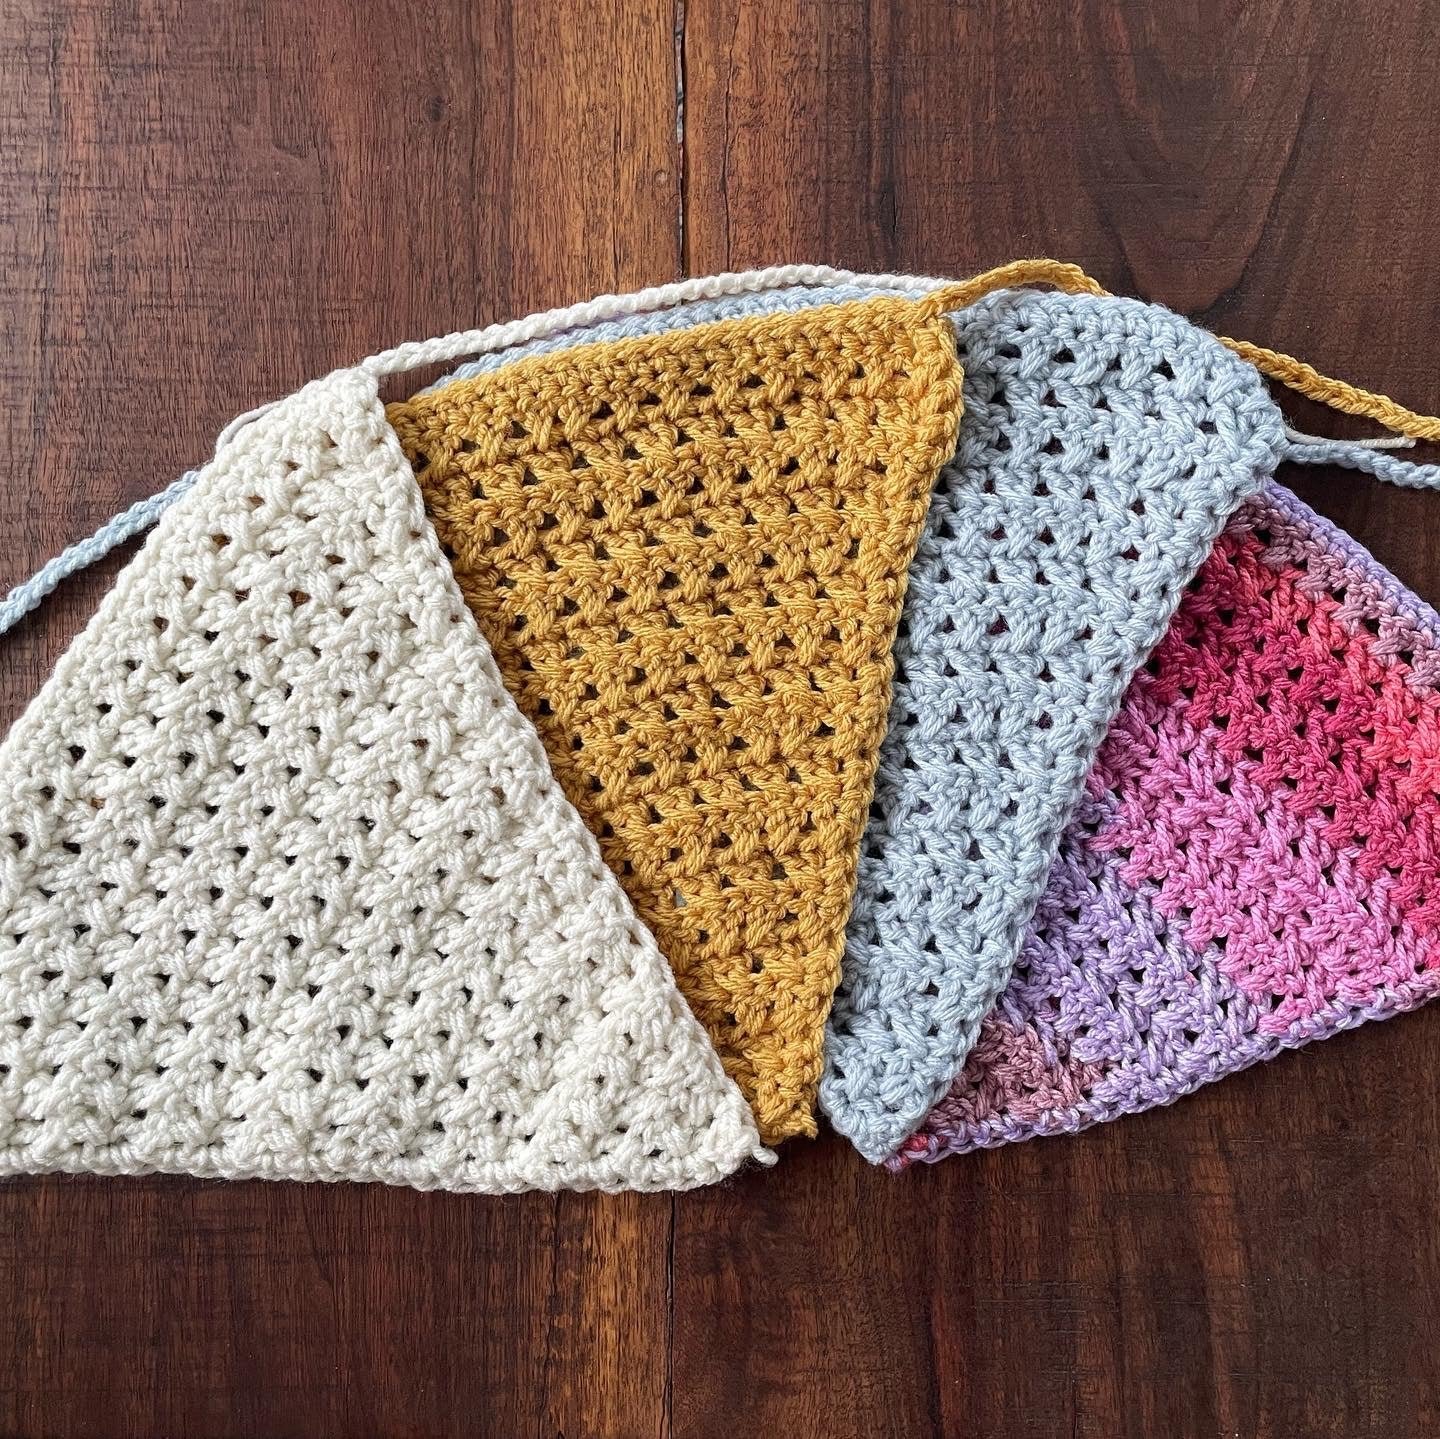 Crochet headscarf 27IrWwn1w